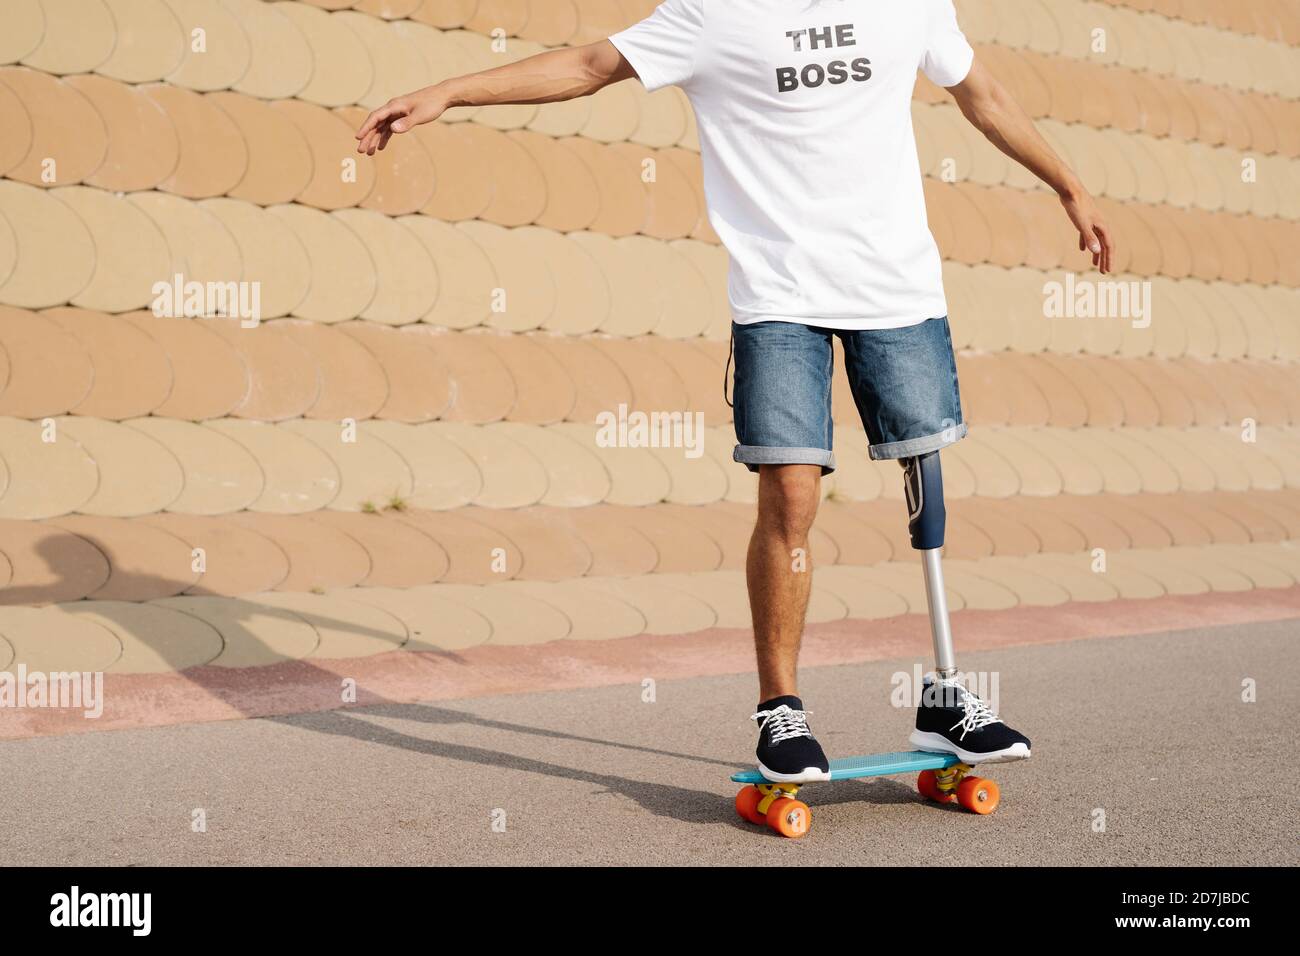 Jeune homme avec un membre et un pied artificiels debout sur une planche à roulettes sur le terrain de sport Banque D'Images